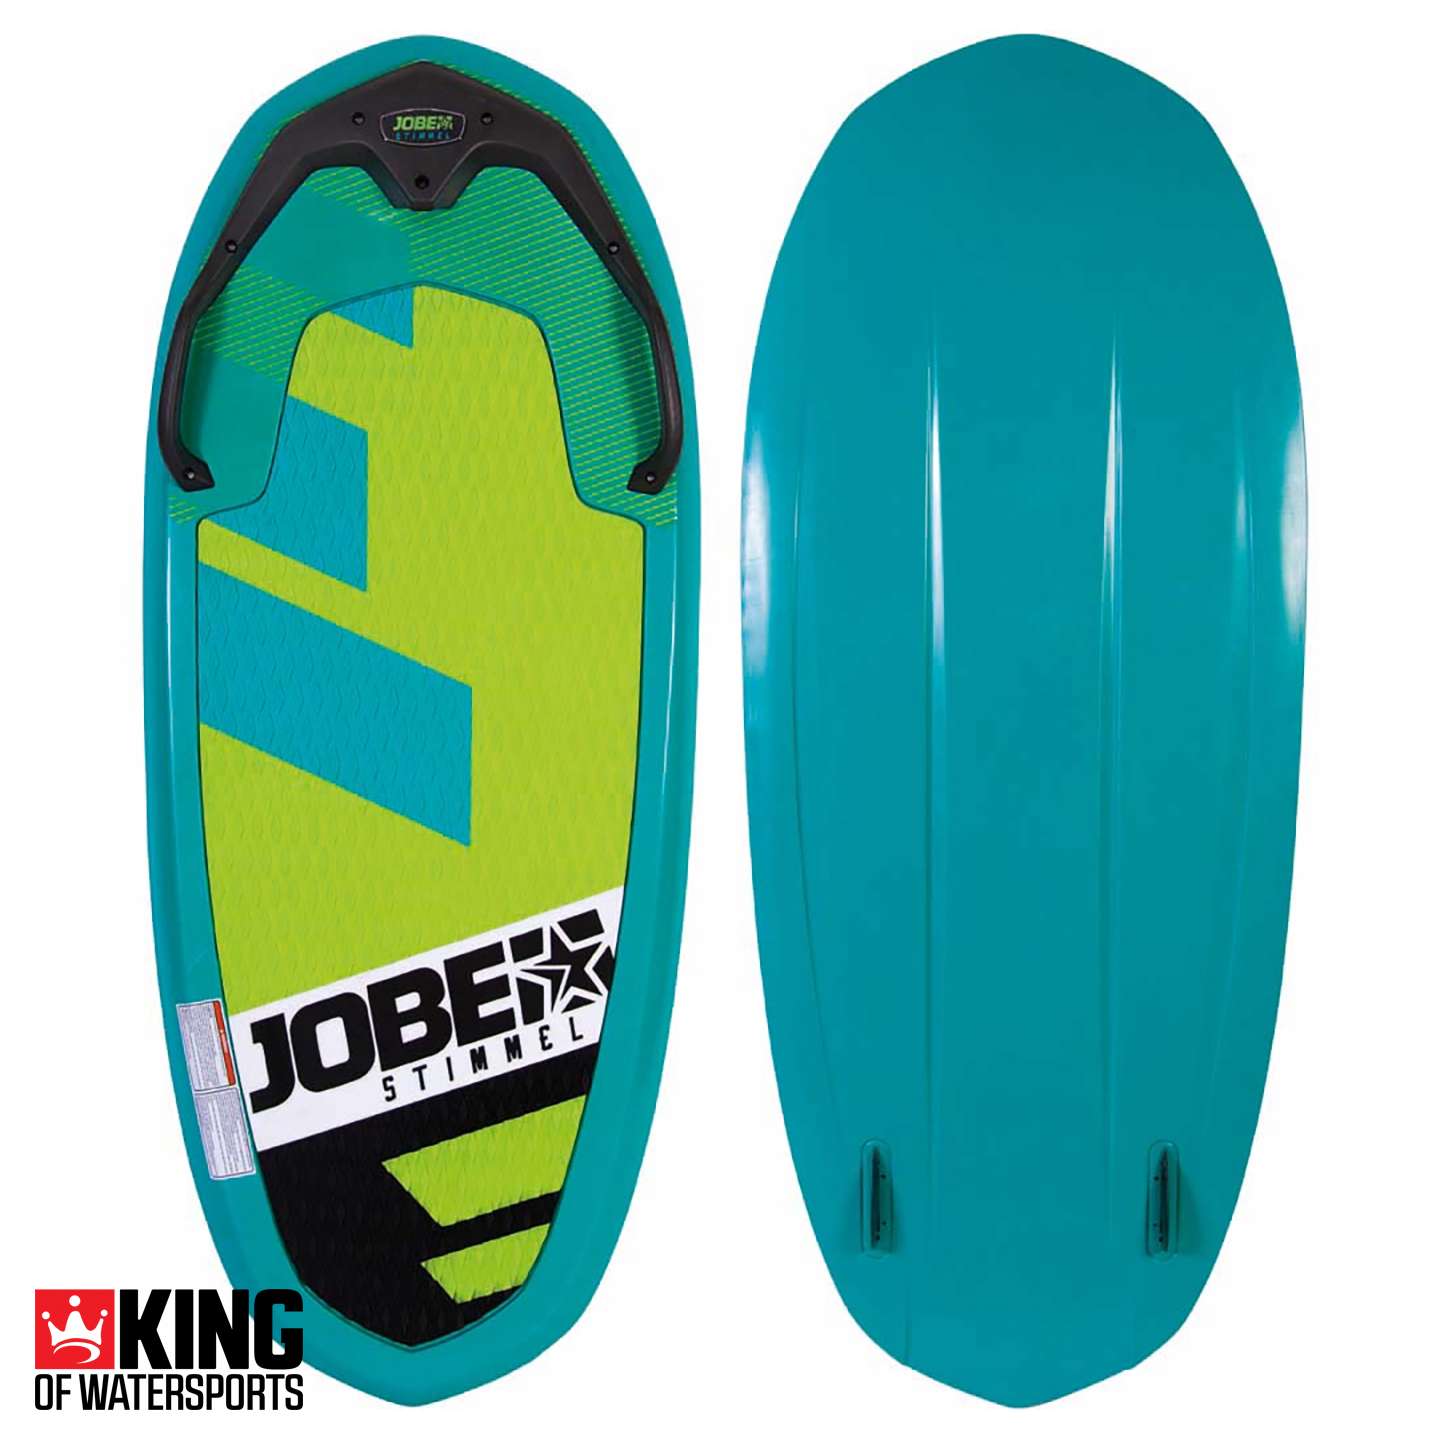 Jobe Stimmel Multiboard Surfboard Kneeboard Bodyboard Wakeboard Wakesurfer 